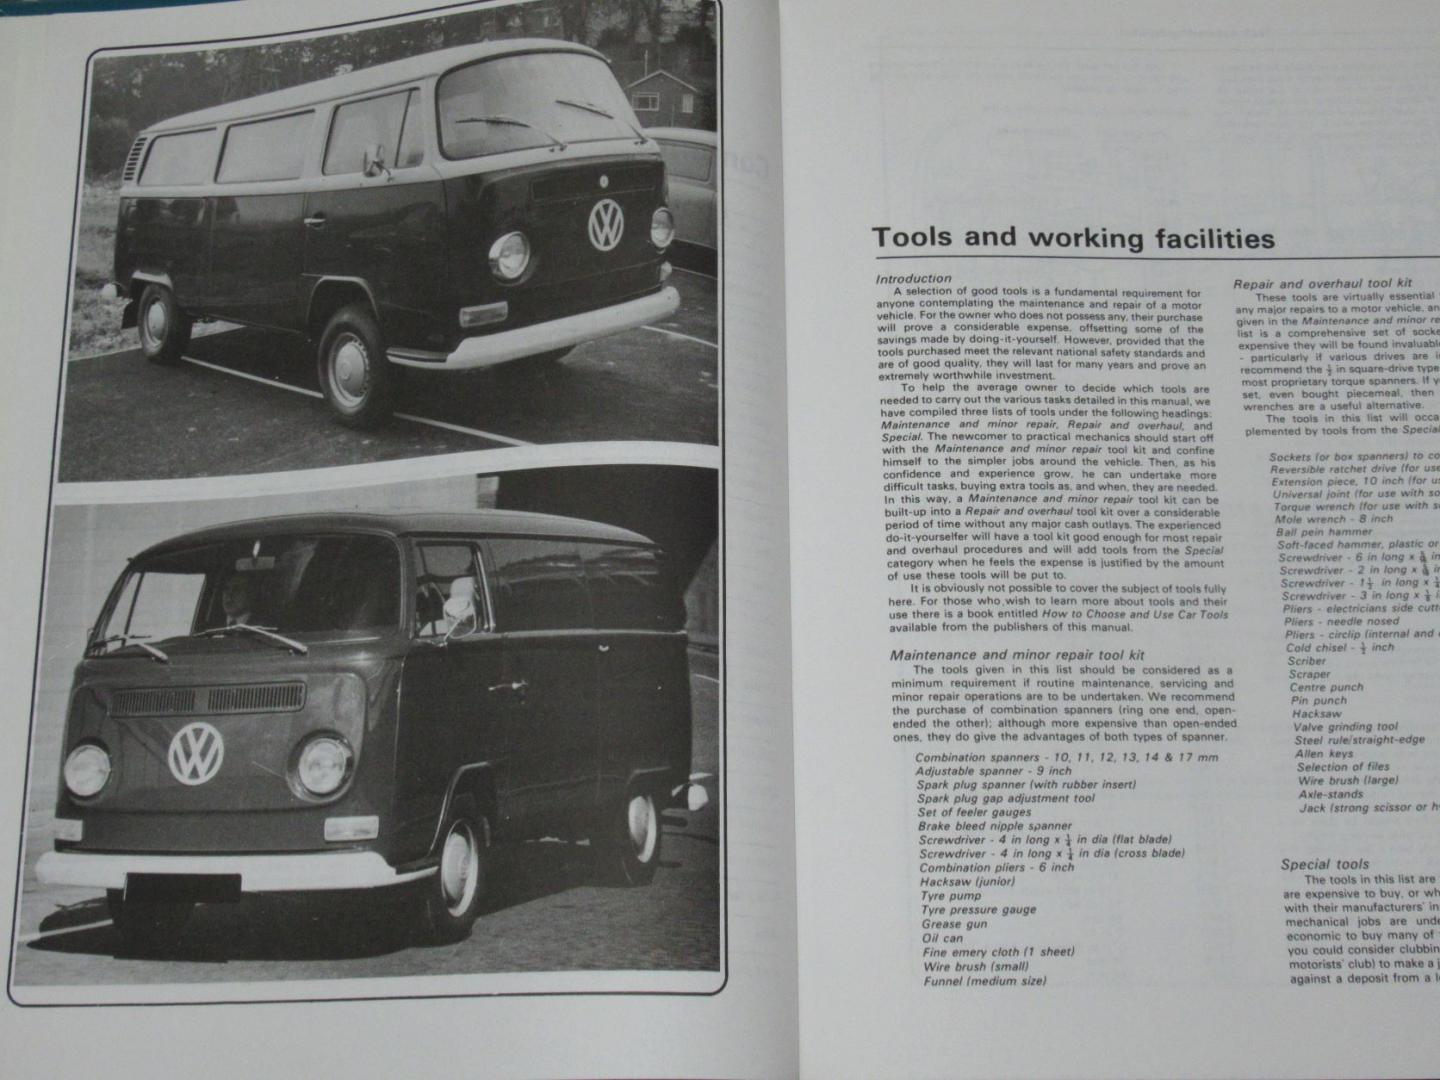 Haynes, J.H. & Stead, D.H. - VW Transporter 1600 Owners Workshop Manual